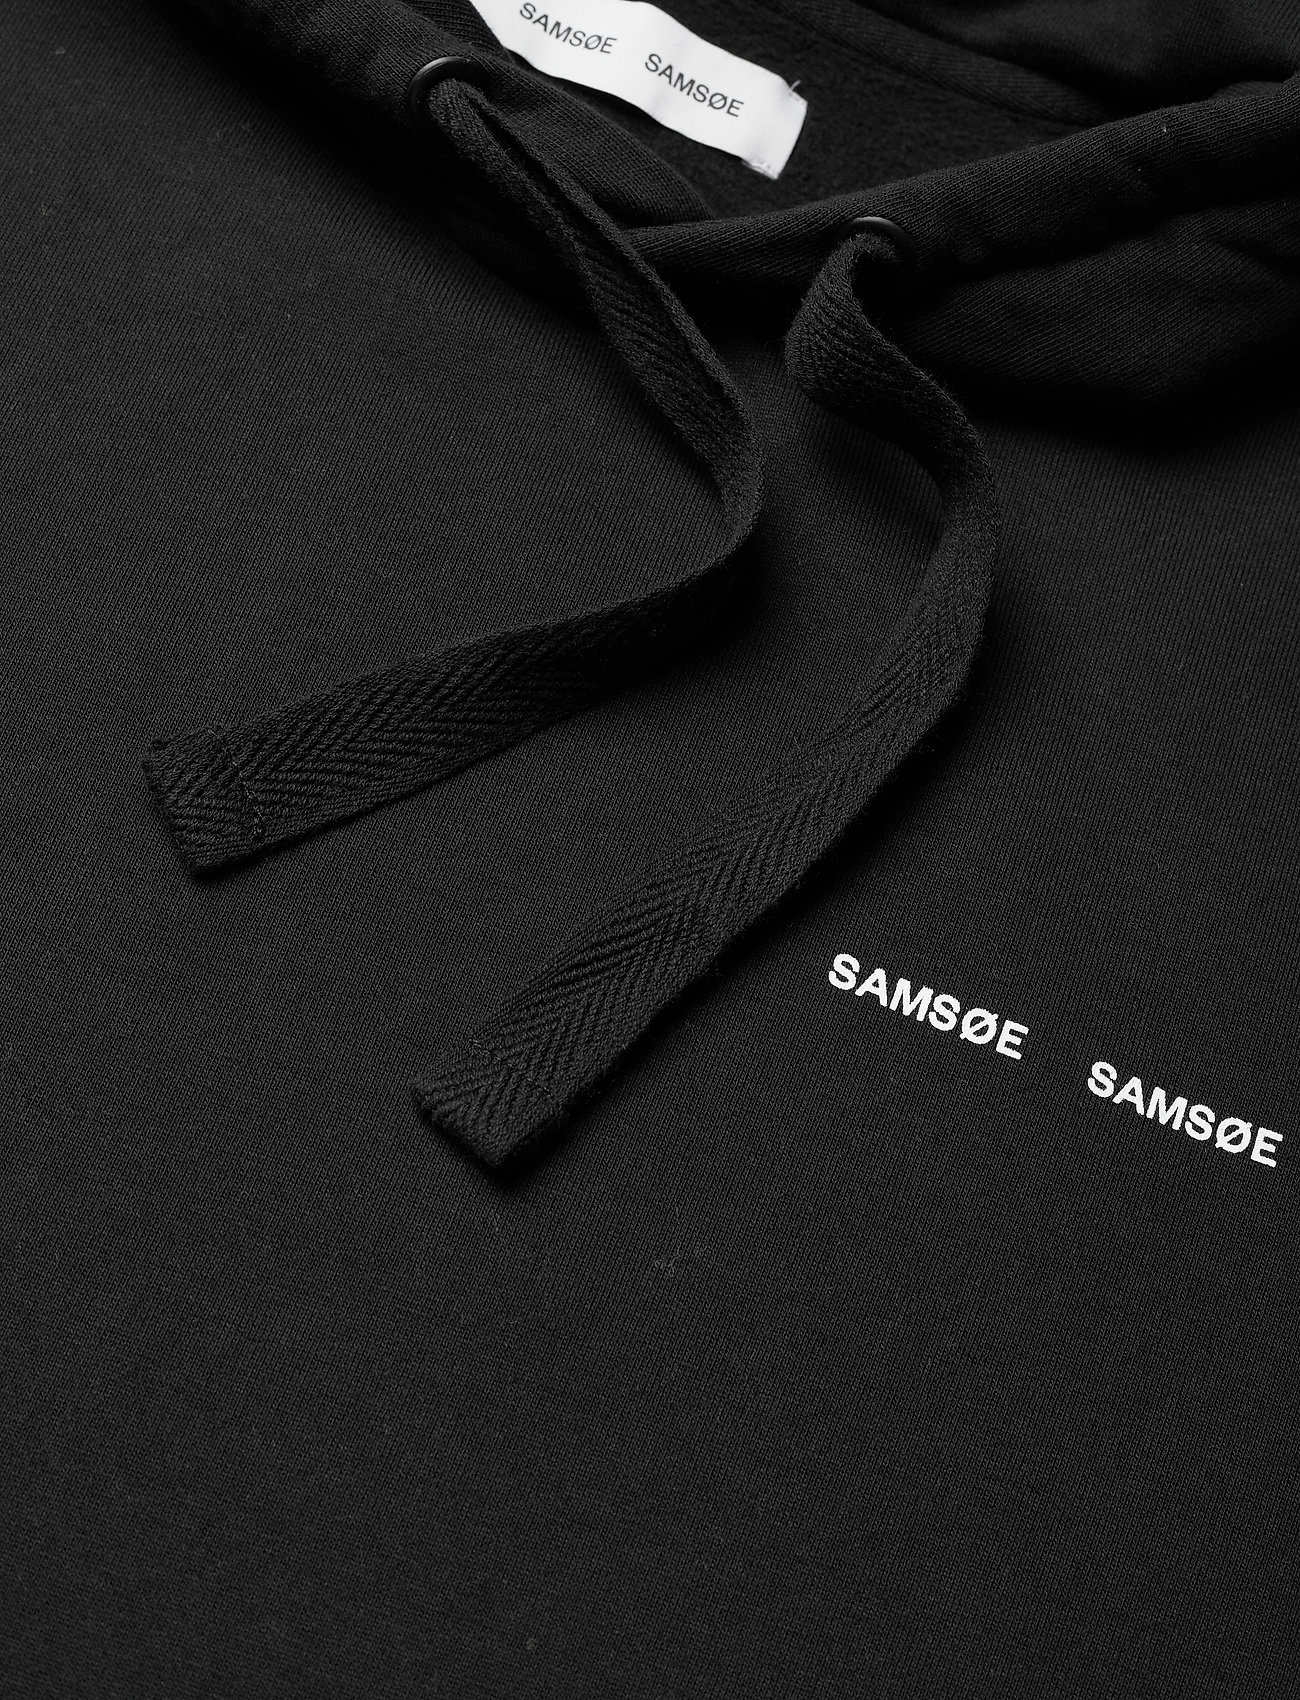 Samsøe Samsøe - Norsbro hoodie 11720 - black - 2